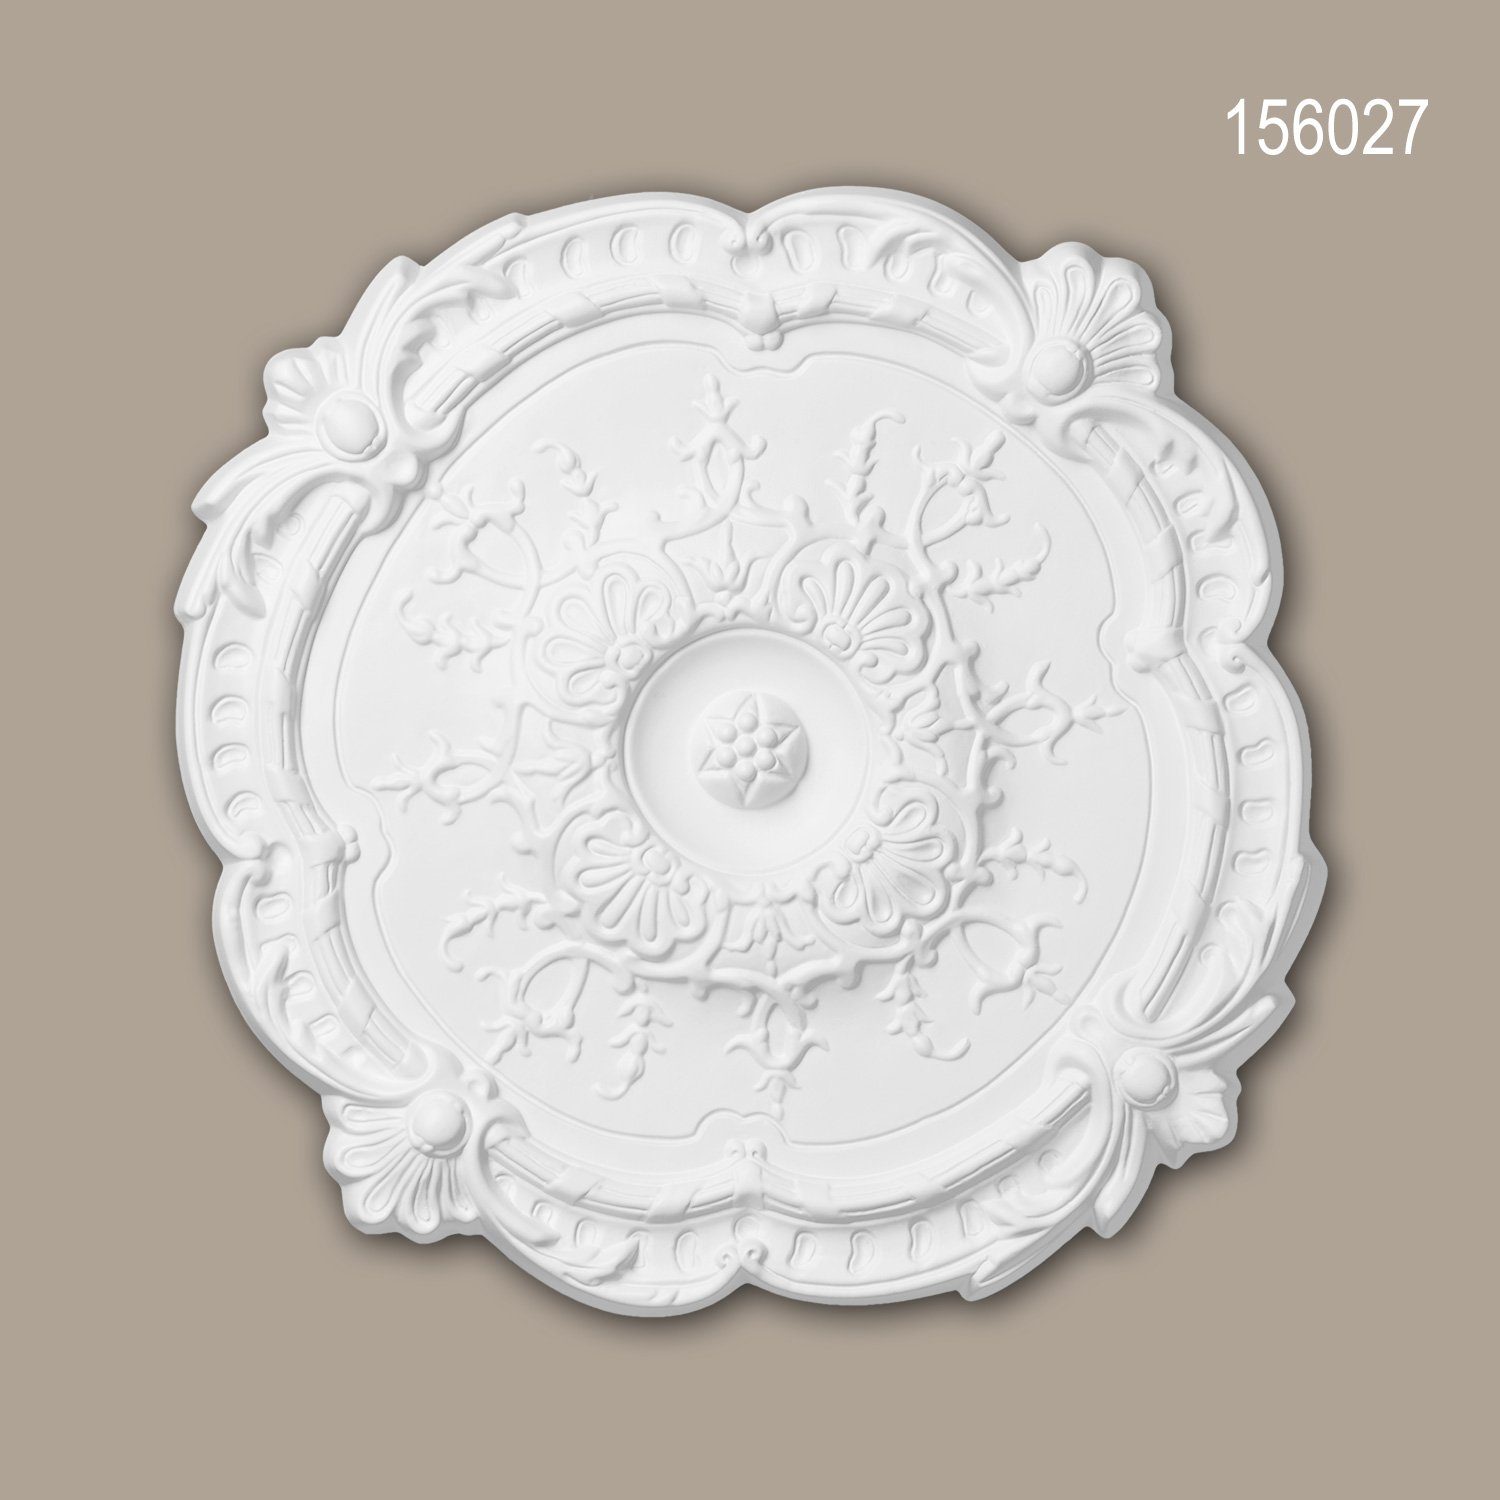 Profhome Decken-Rosette 156027 (Rosette, 1 St., Deckenrosette, Medallion, Stuckrosette, Deckenelement, Zierelement, Durchmesser 38,3 cm), weiß, vorgrundiert, Stil: Rokoko / Barock